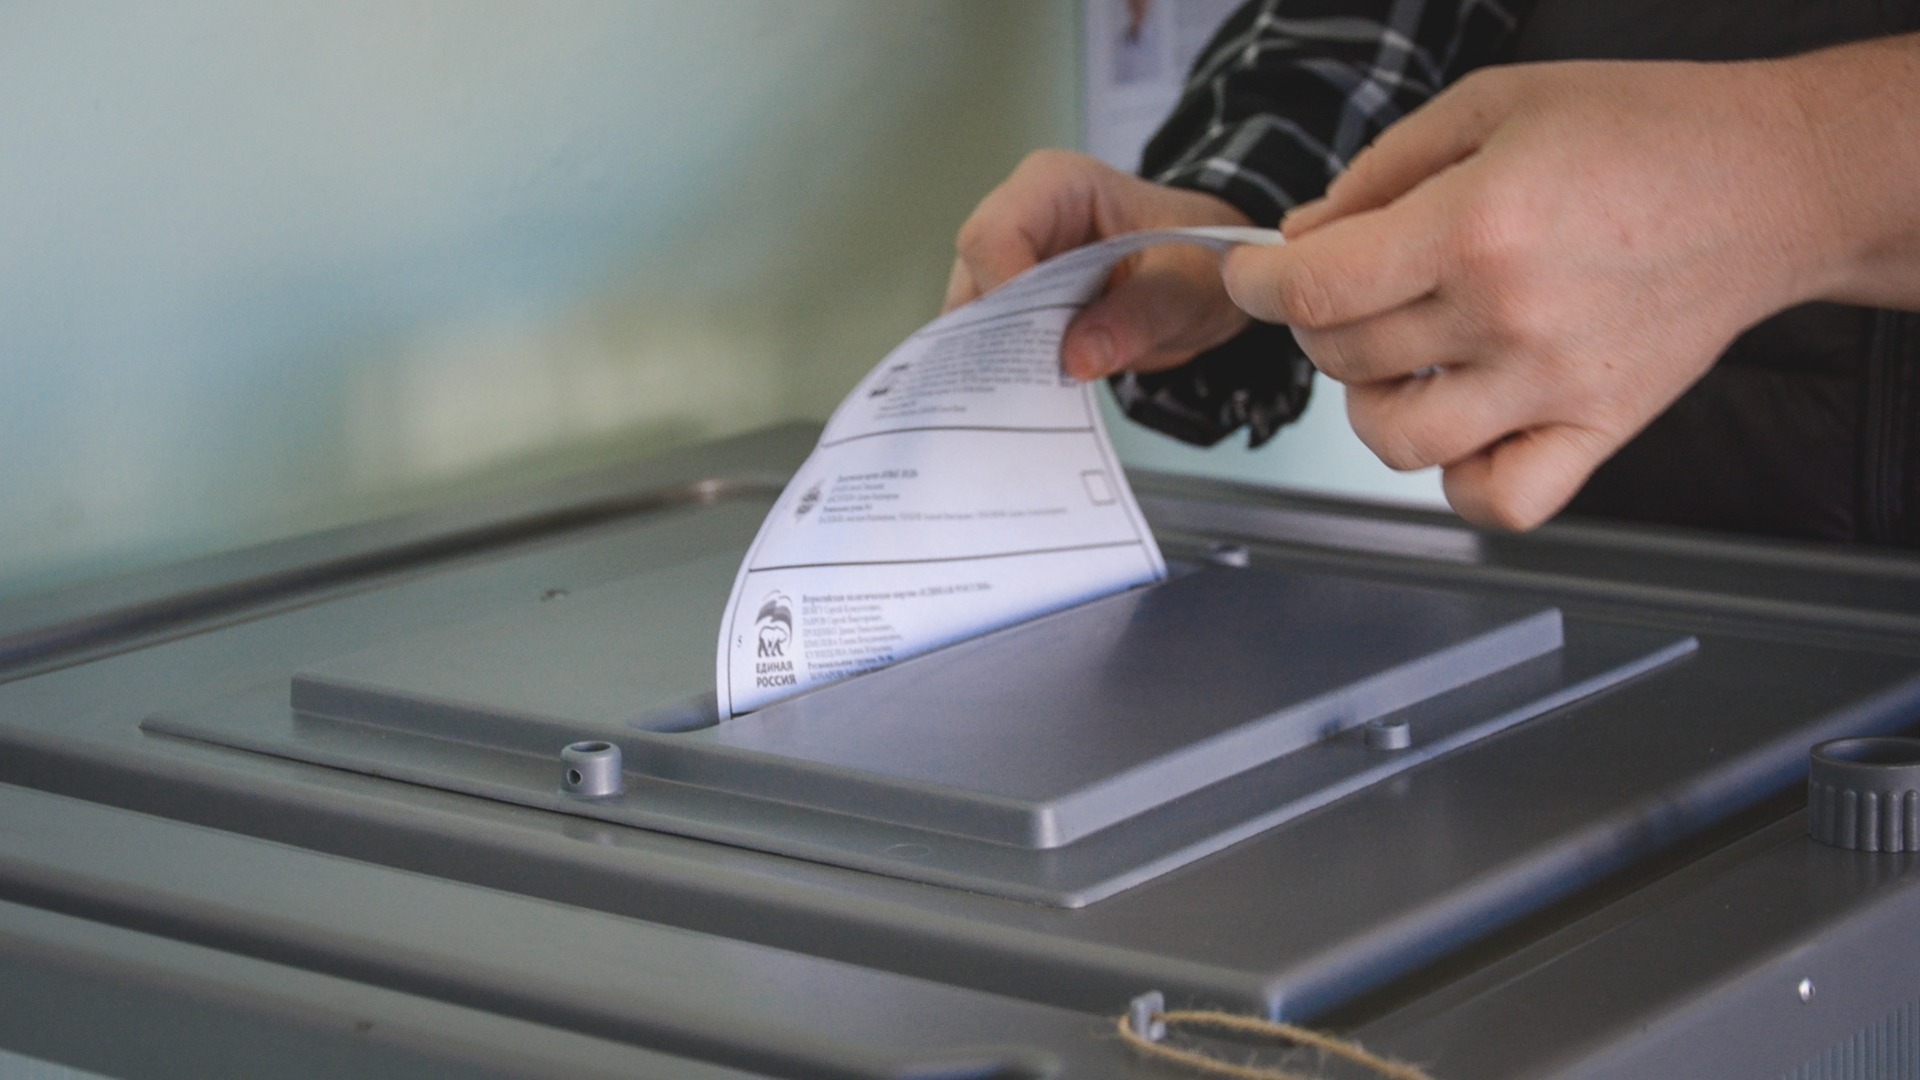 203 резервных и мобильных пункта голосования утверждены в Нижнем Новгороде